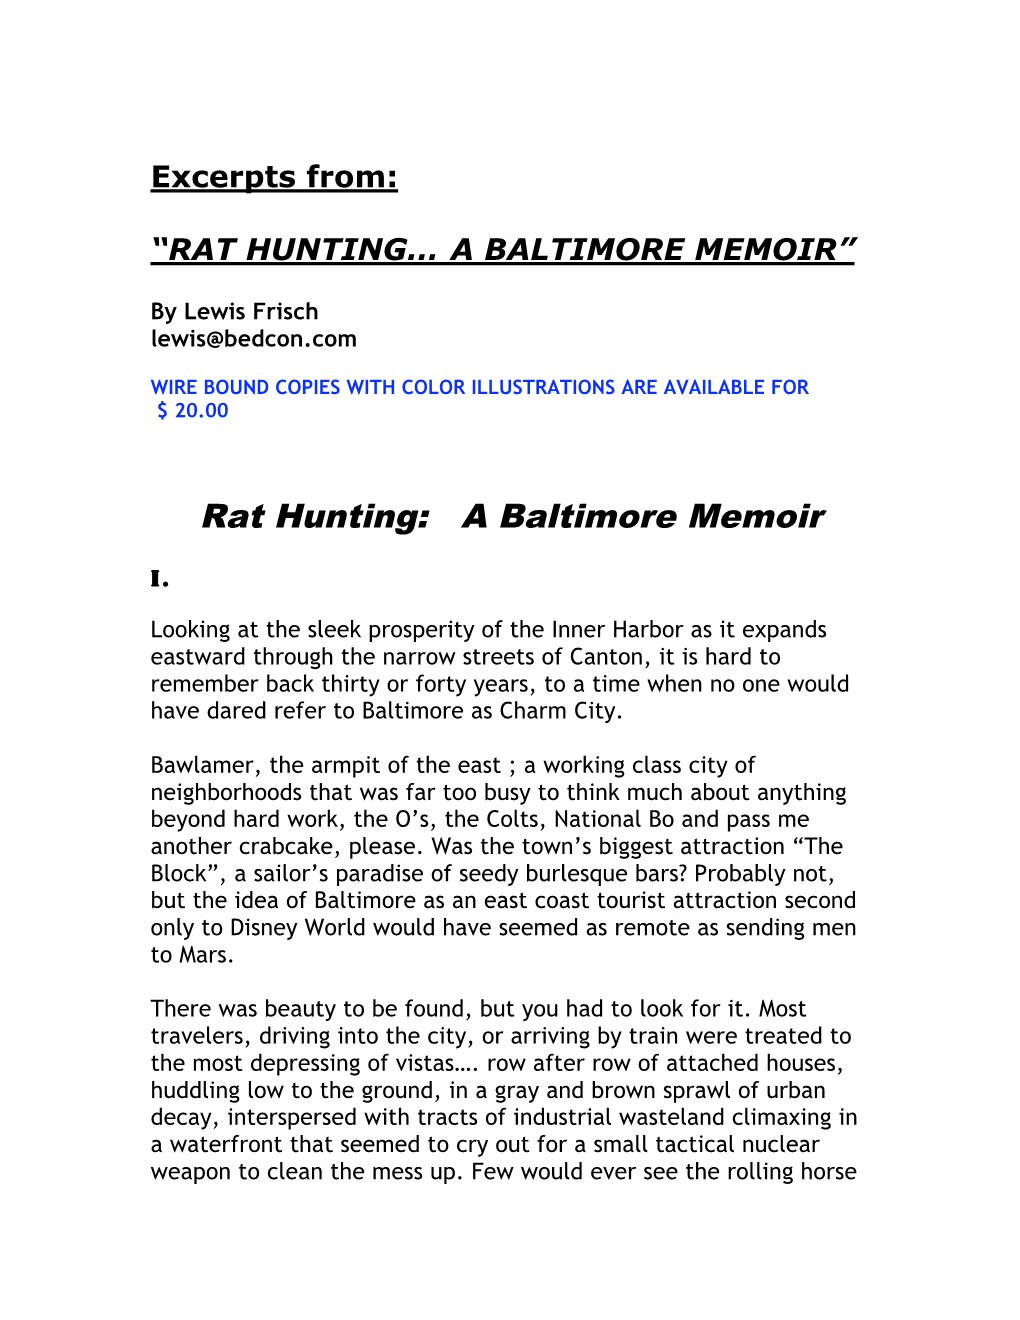 Rat Hunting: a Baltimore Memoir